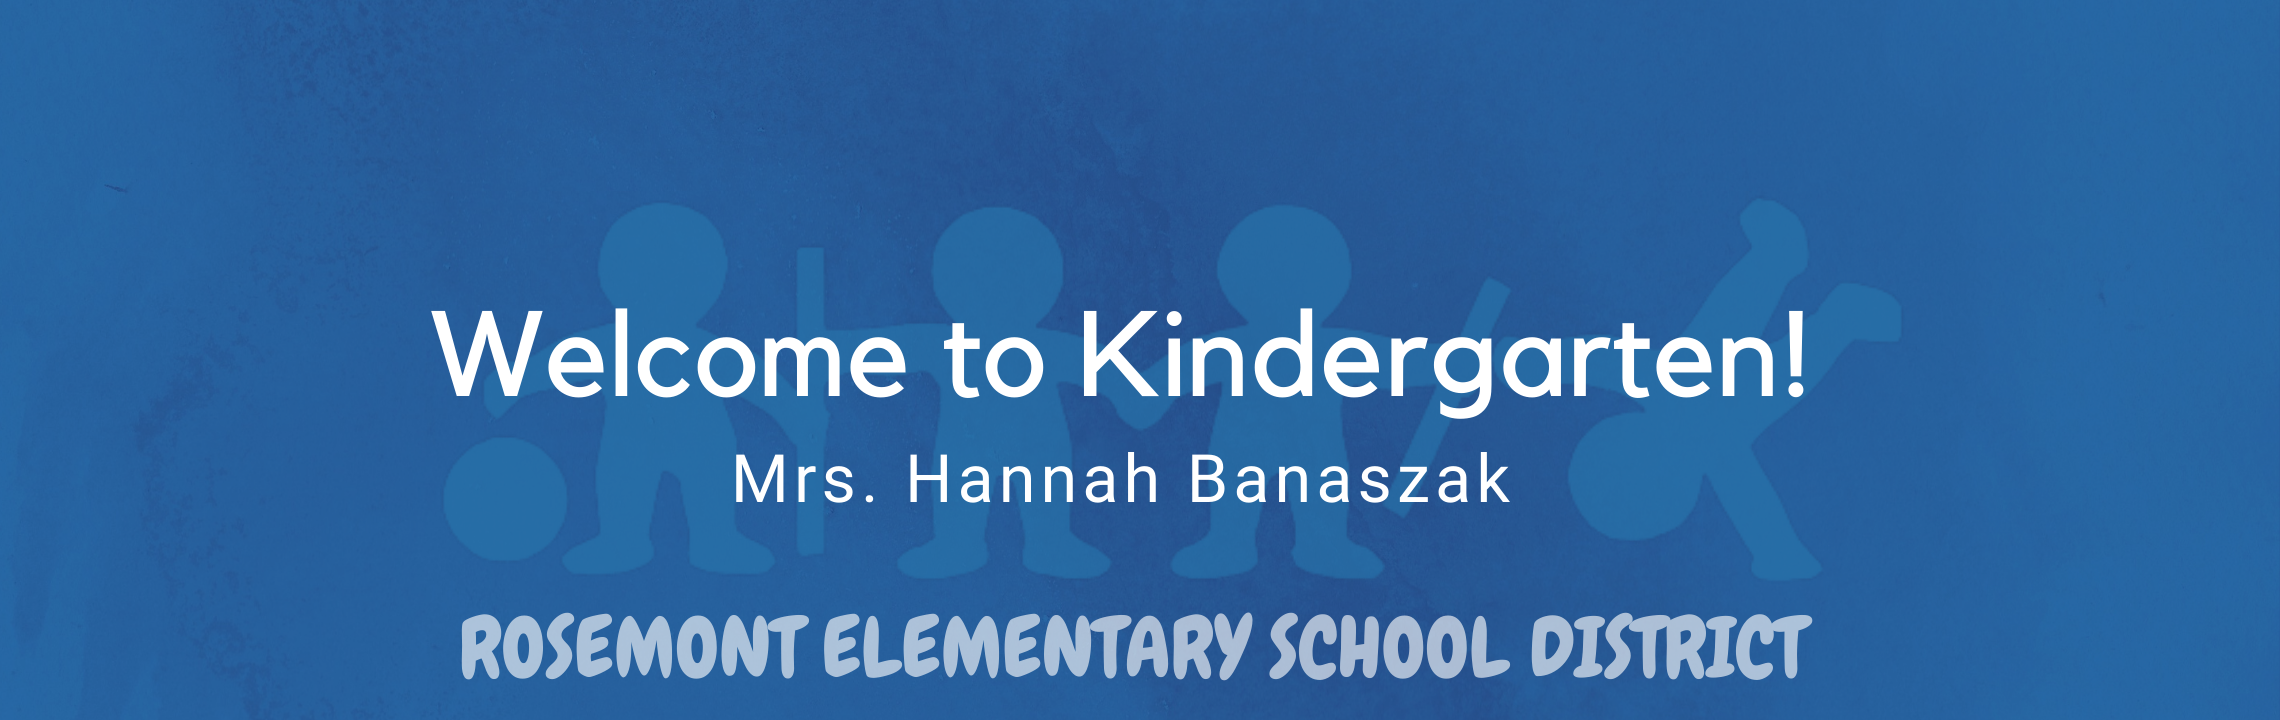 Welcome to Kindergarten, Mrs. Hannah Banaszak, Rosemont Elementary Schools 